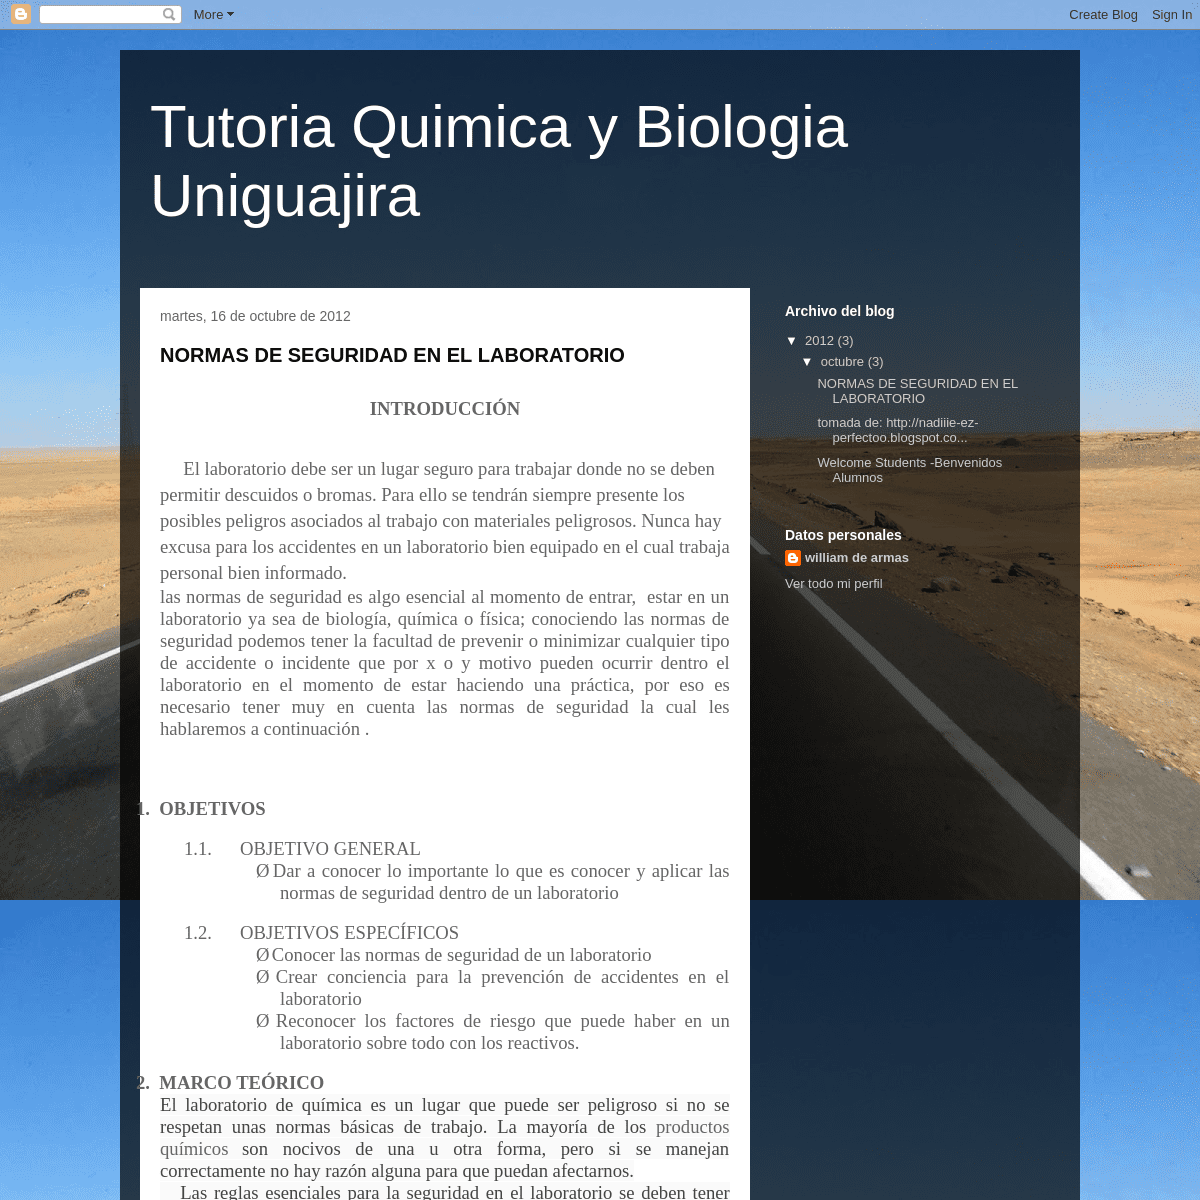 Tutoria Quimica y Biologia Uniguajira